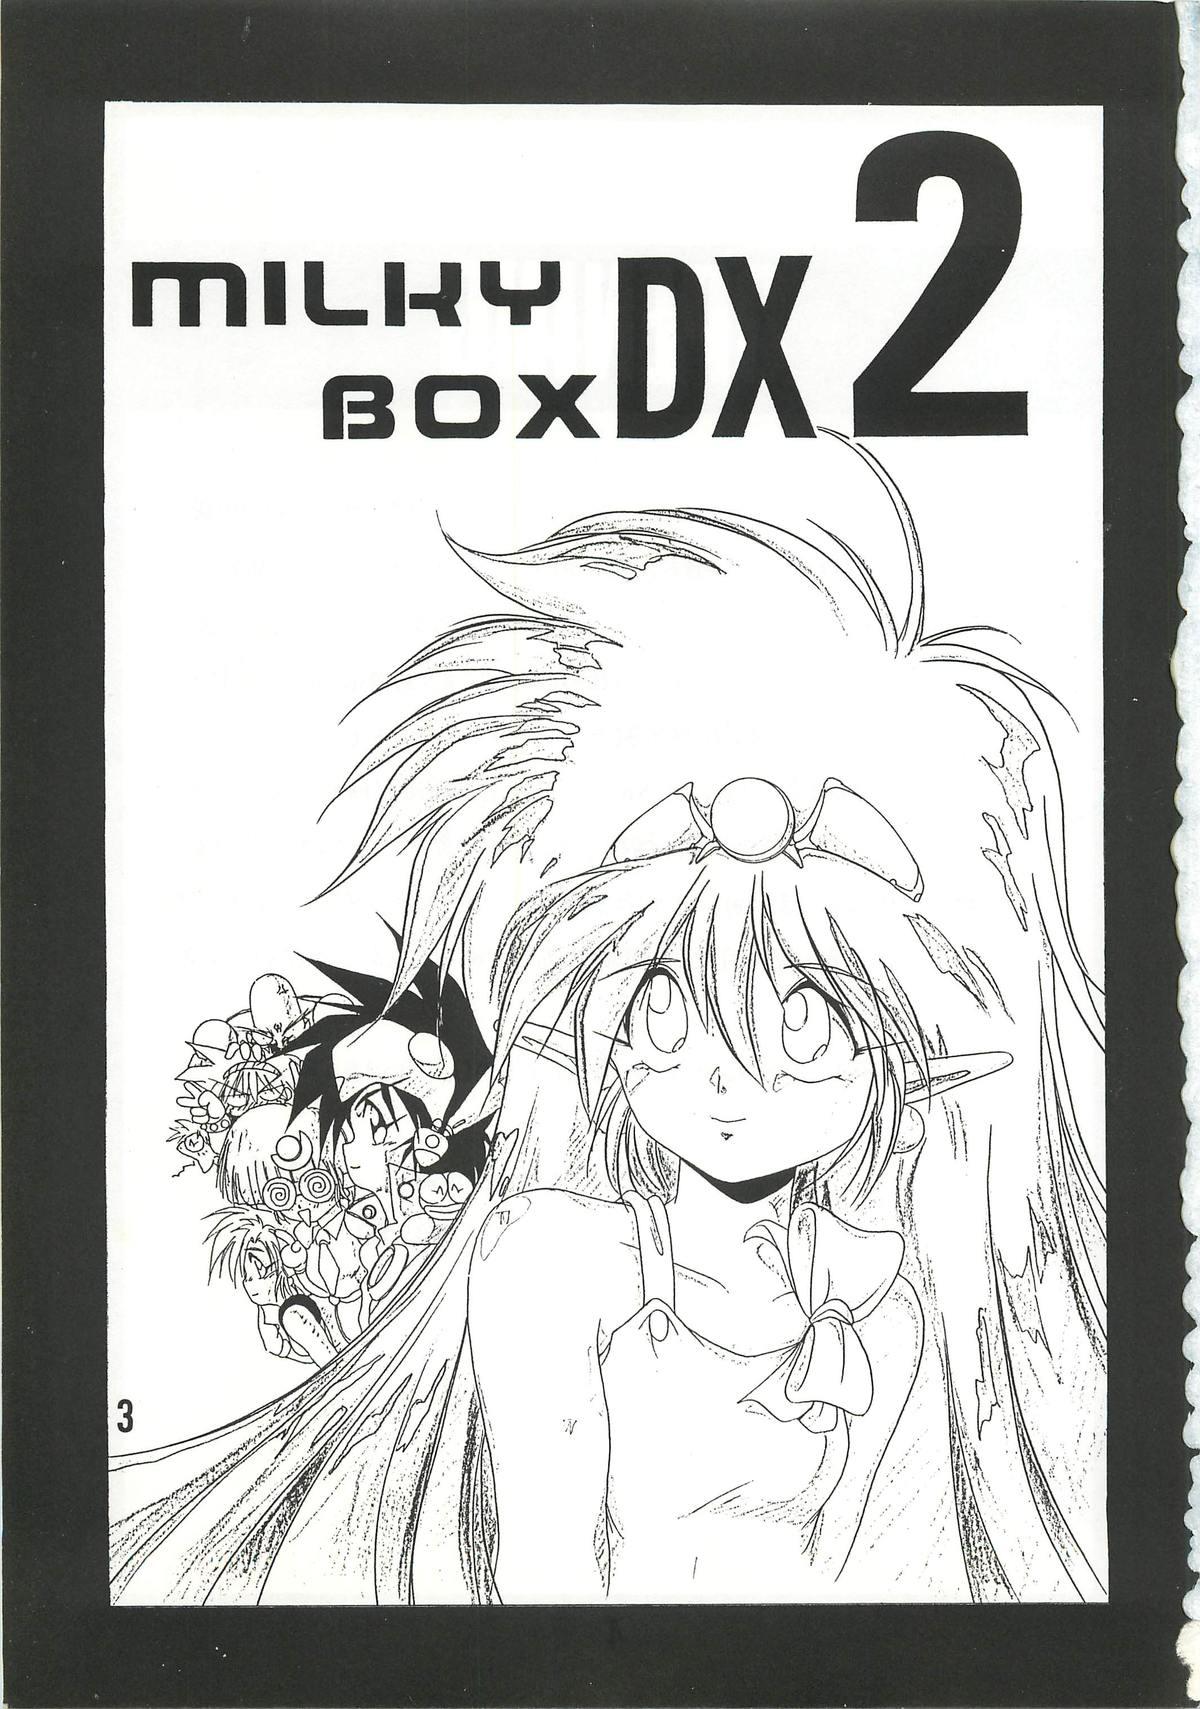 Sfm MILKY BOX DX2 - Ng knight lamune and 40 Amiga - Page 2